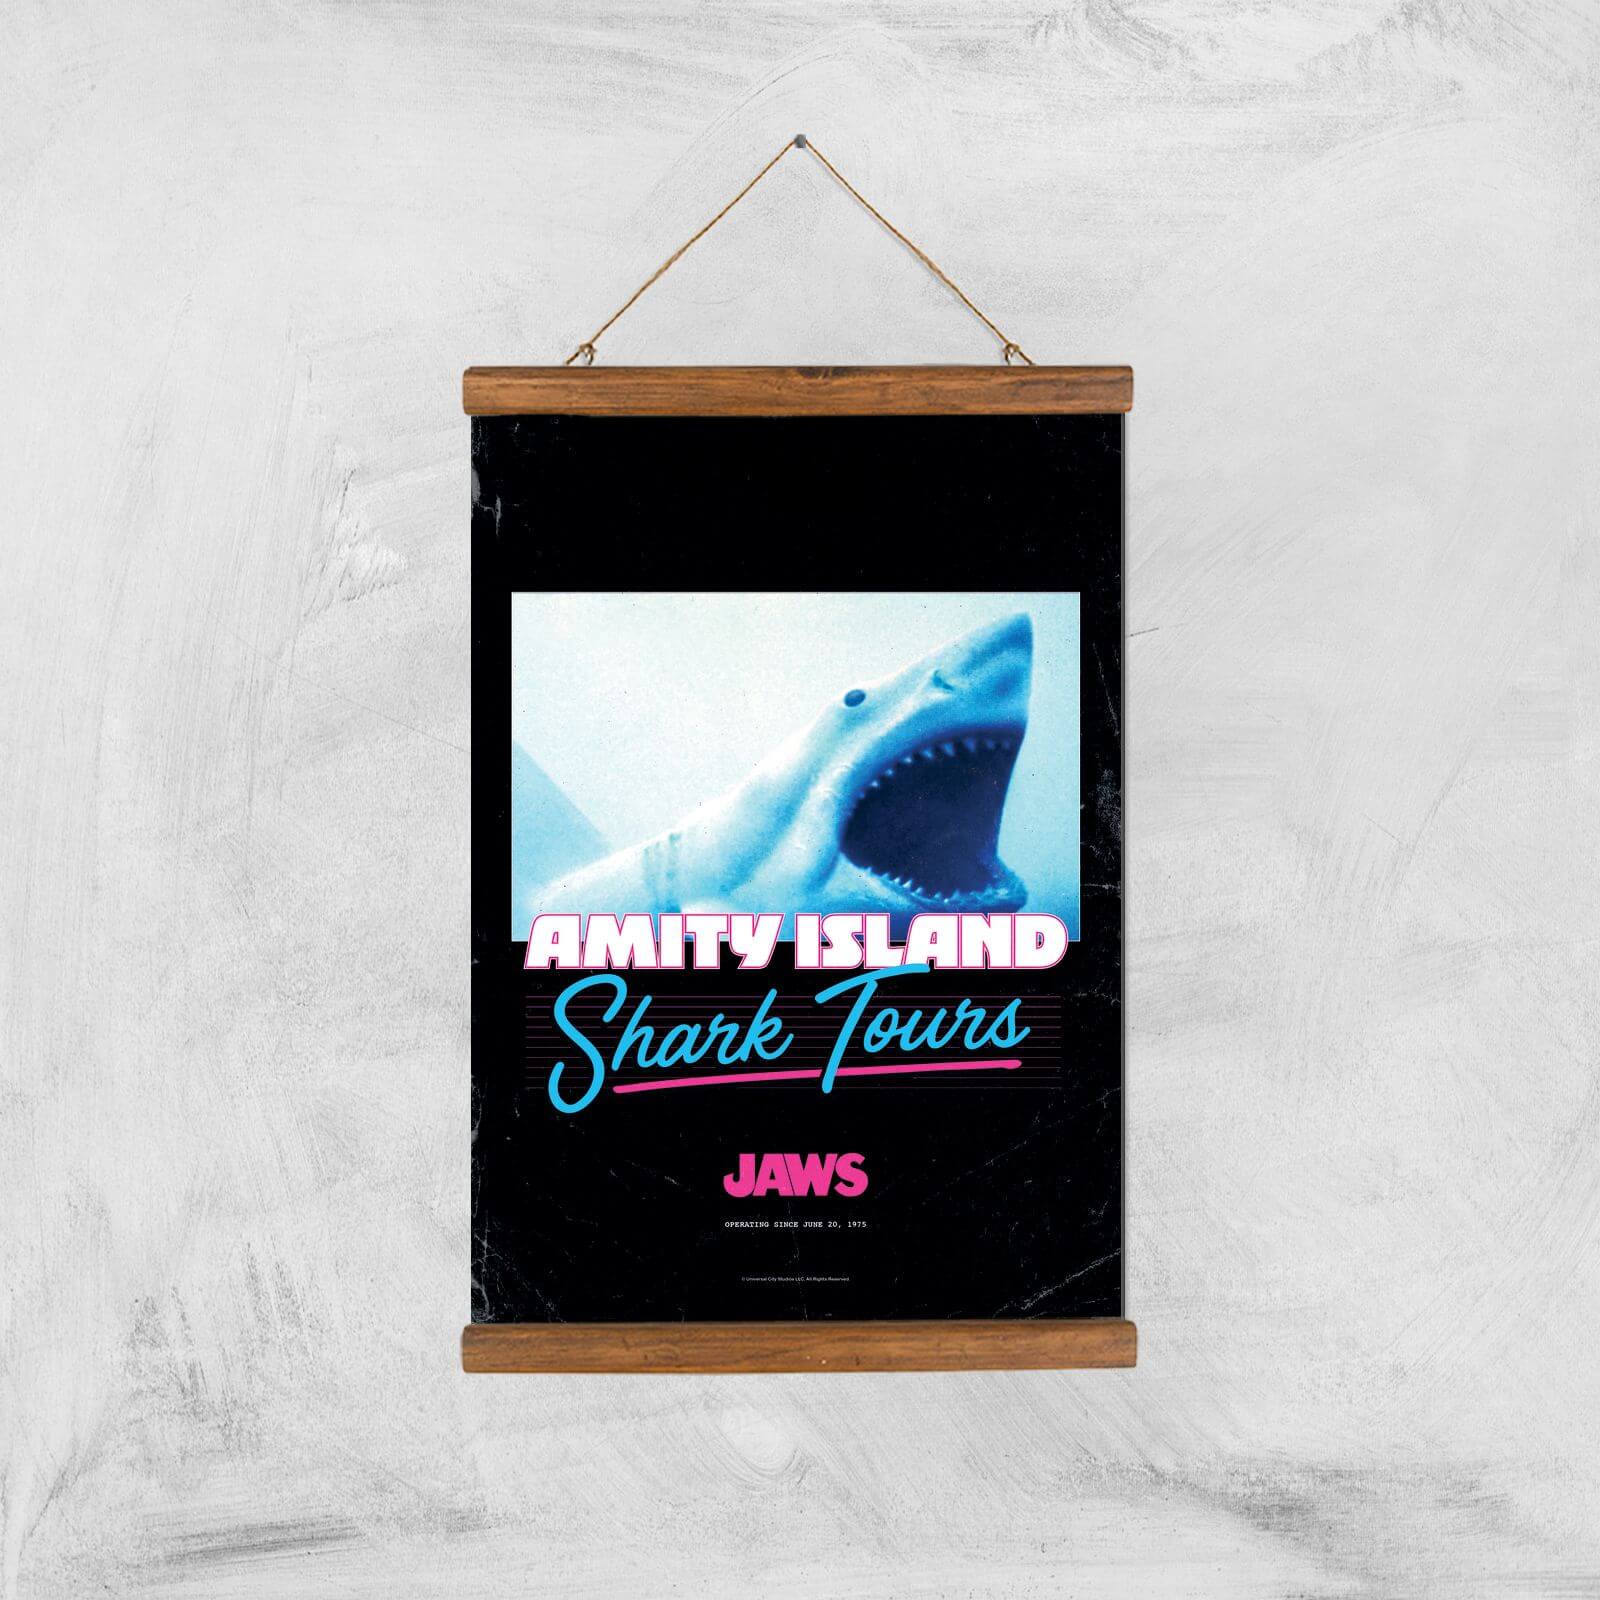 Jaws Amity Island Shark Tours Giclee Art Print - A3 - Wooden Hanger